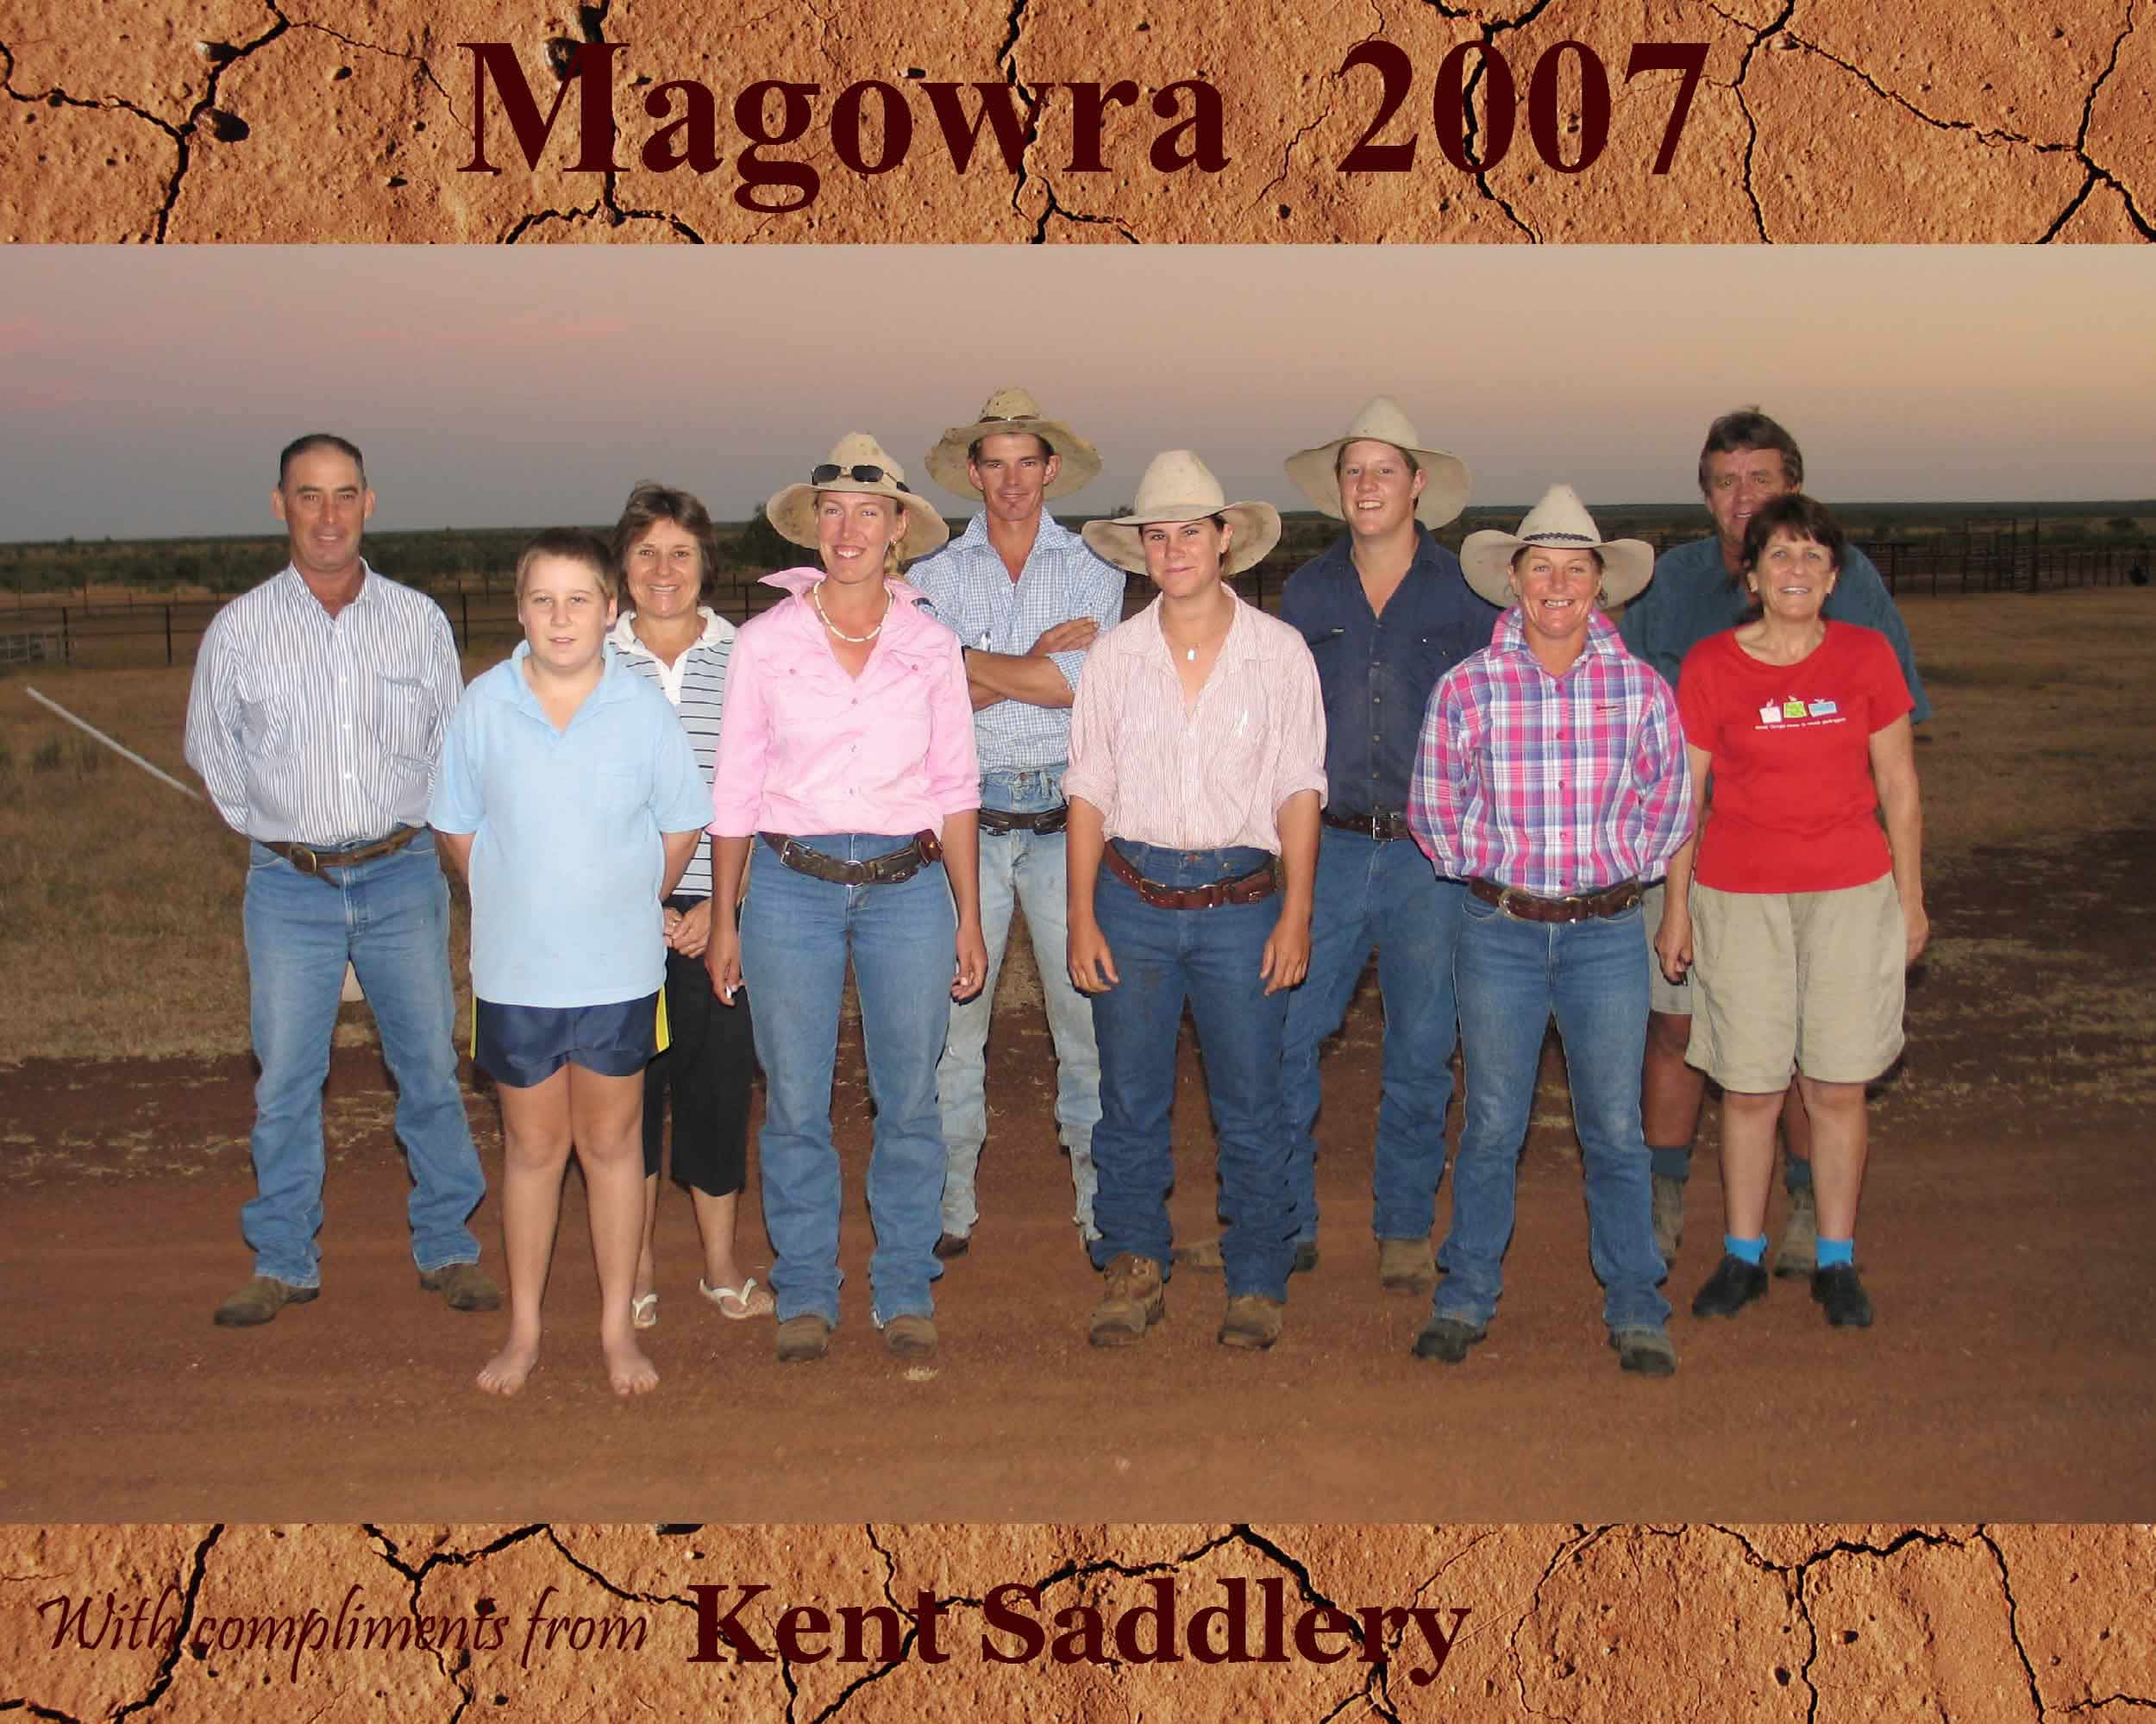 Queensland - Magowra 24